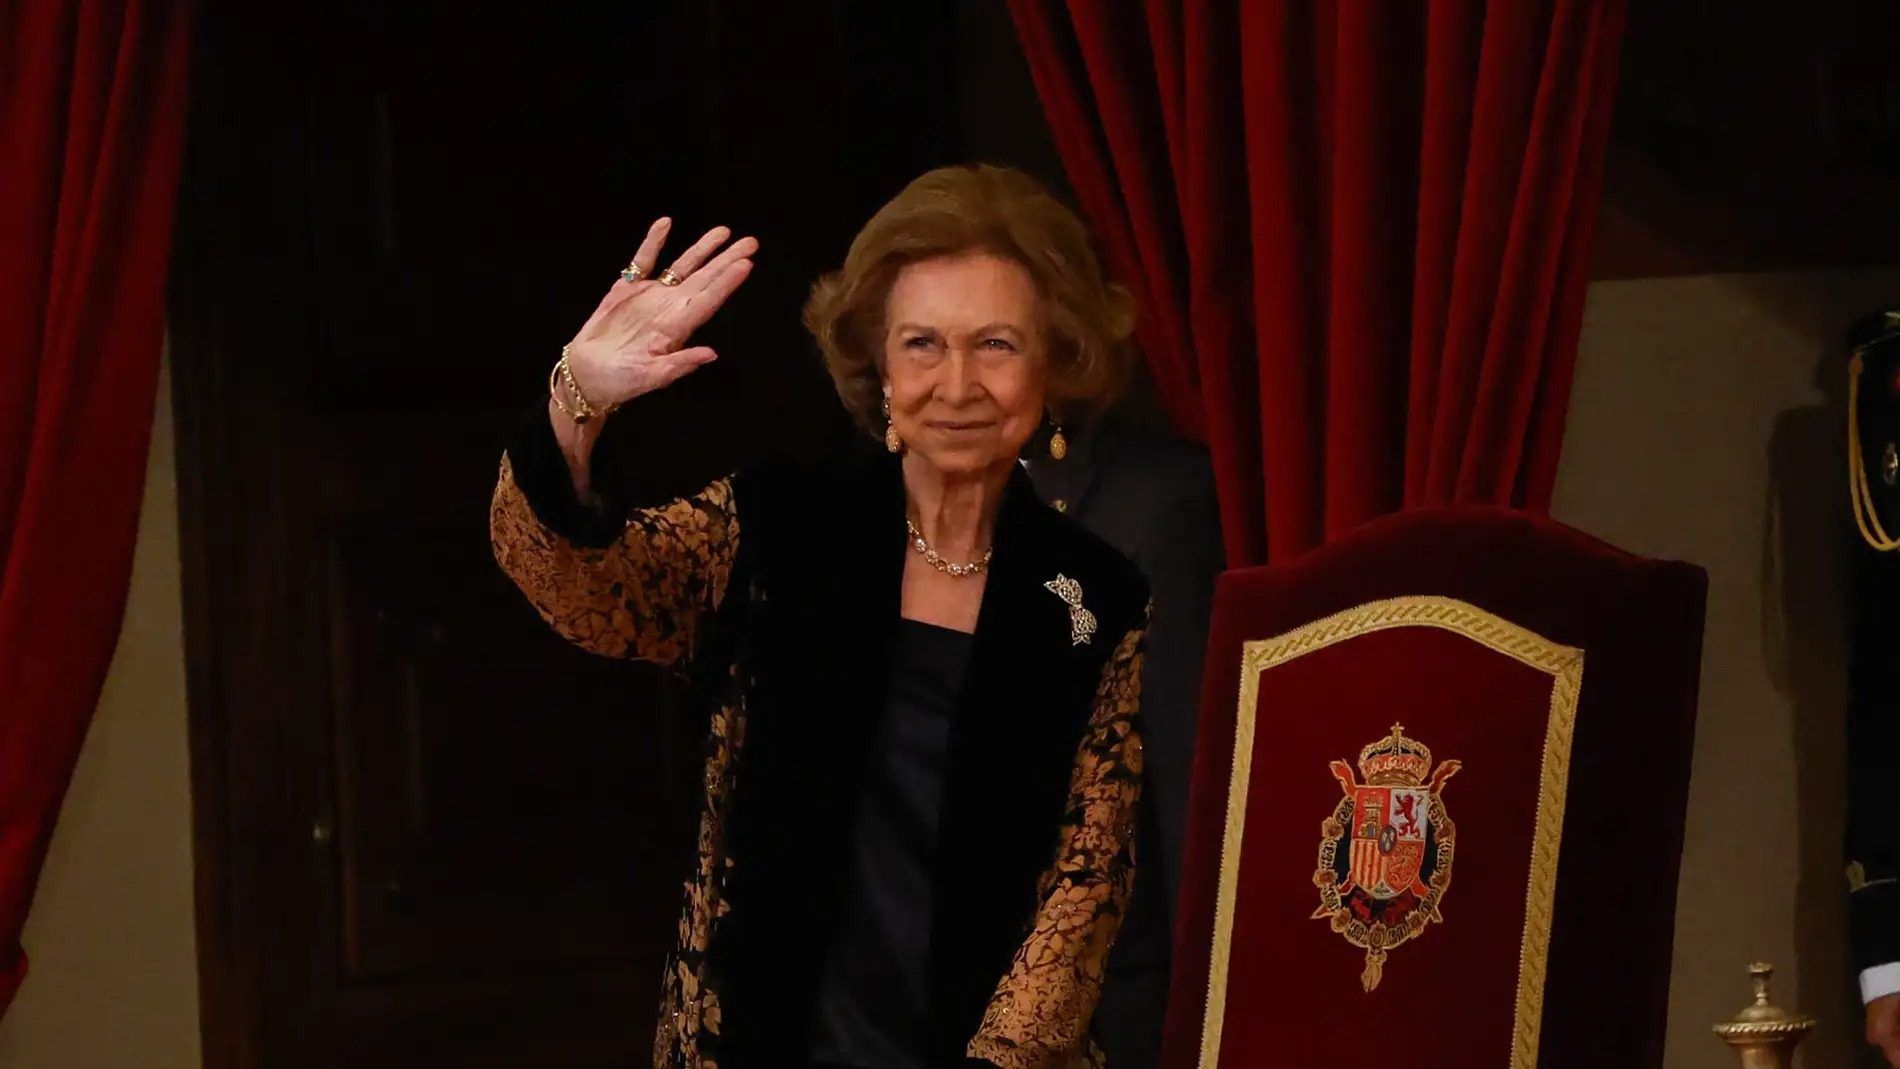 La reina Sofía está siendo presionada para desaparecer después de la jura de la constitución de Leonor